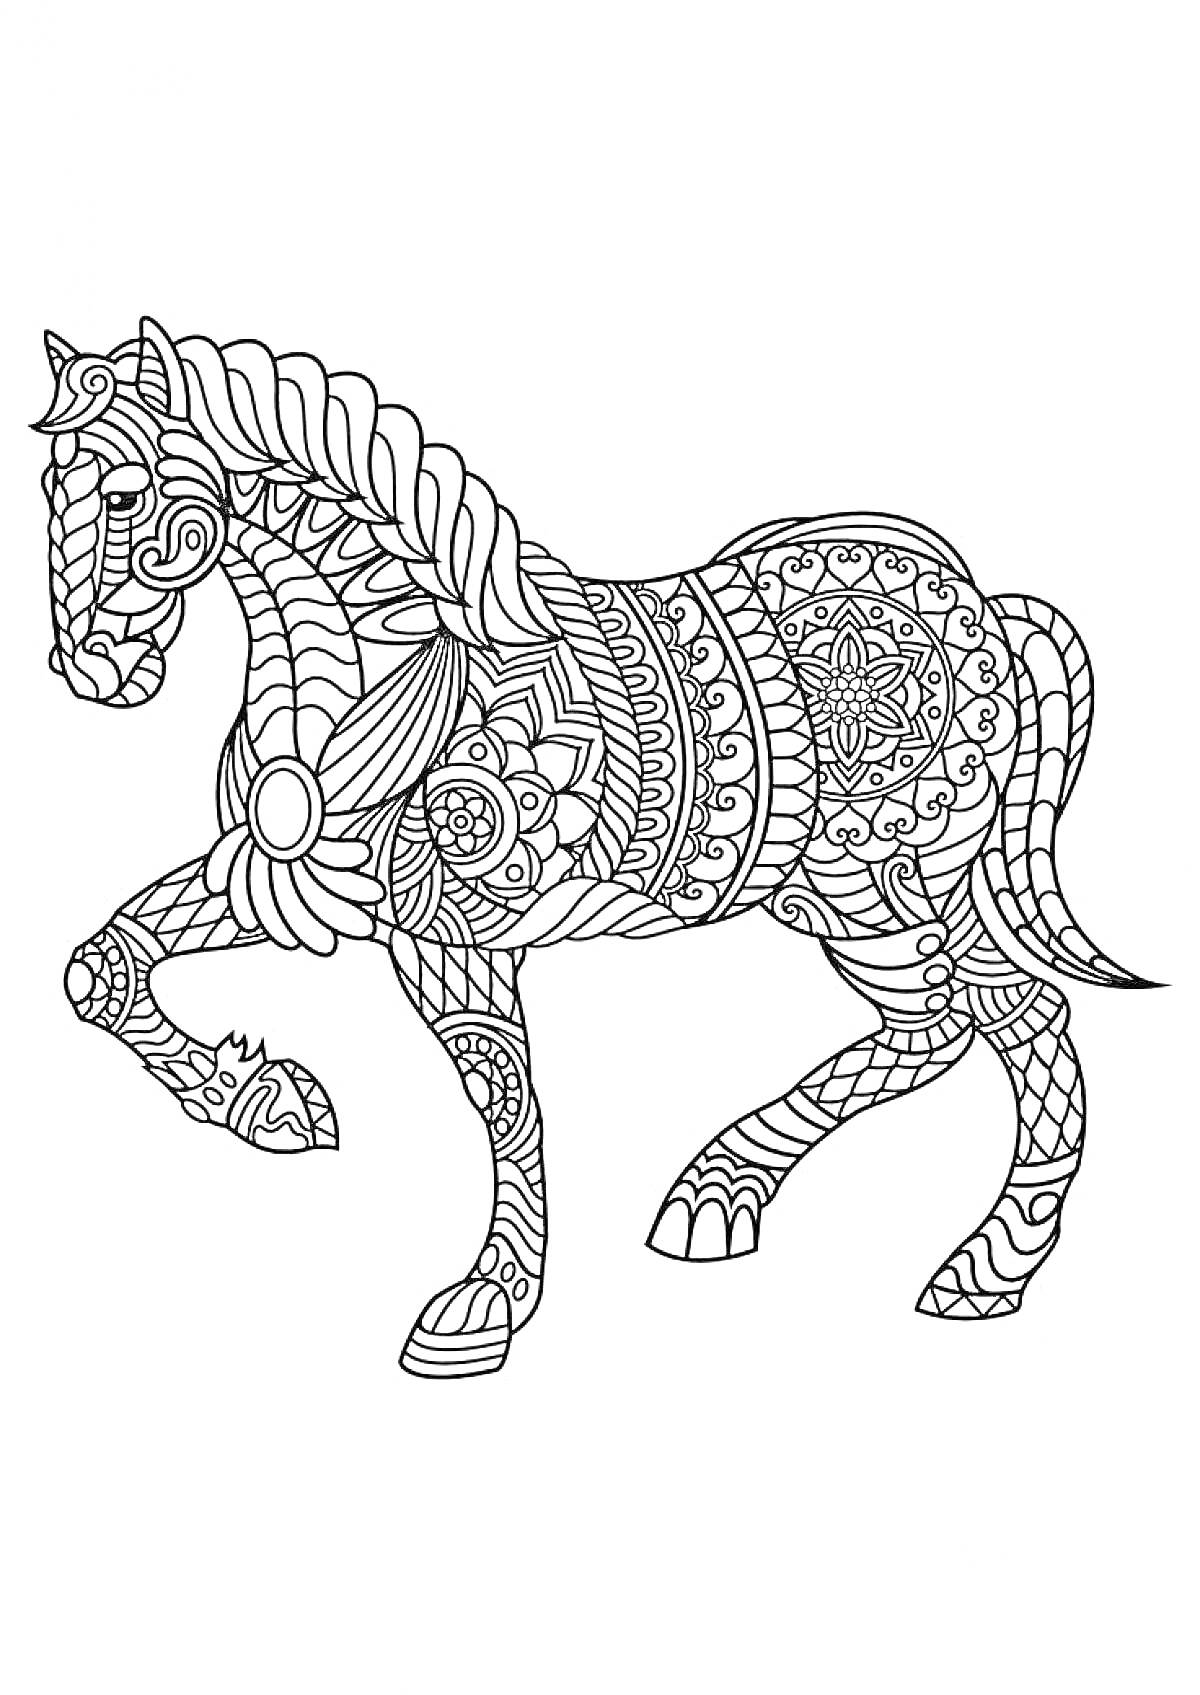 Раскраска Антистресс лошадь с орнаментом из цветов и узоров